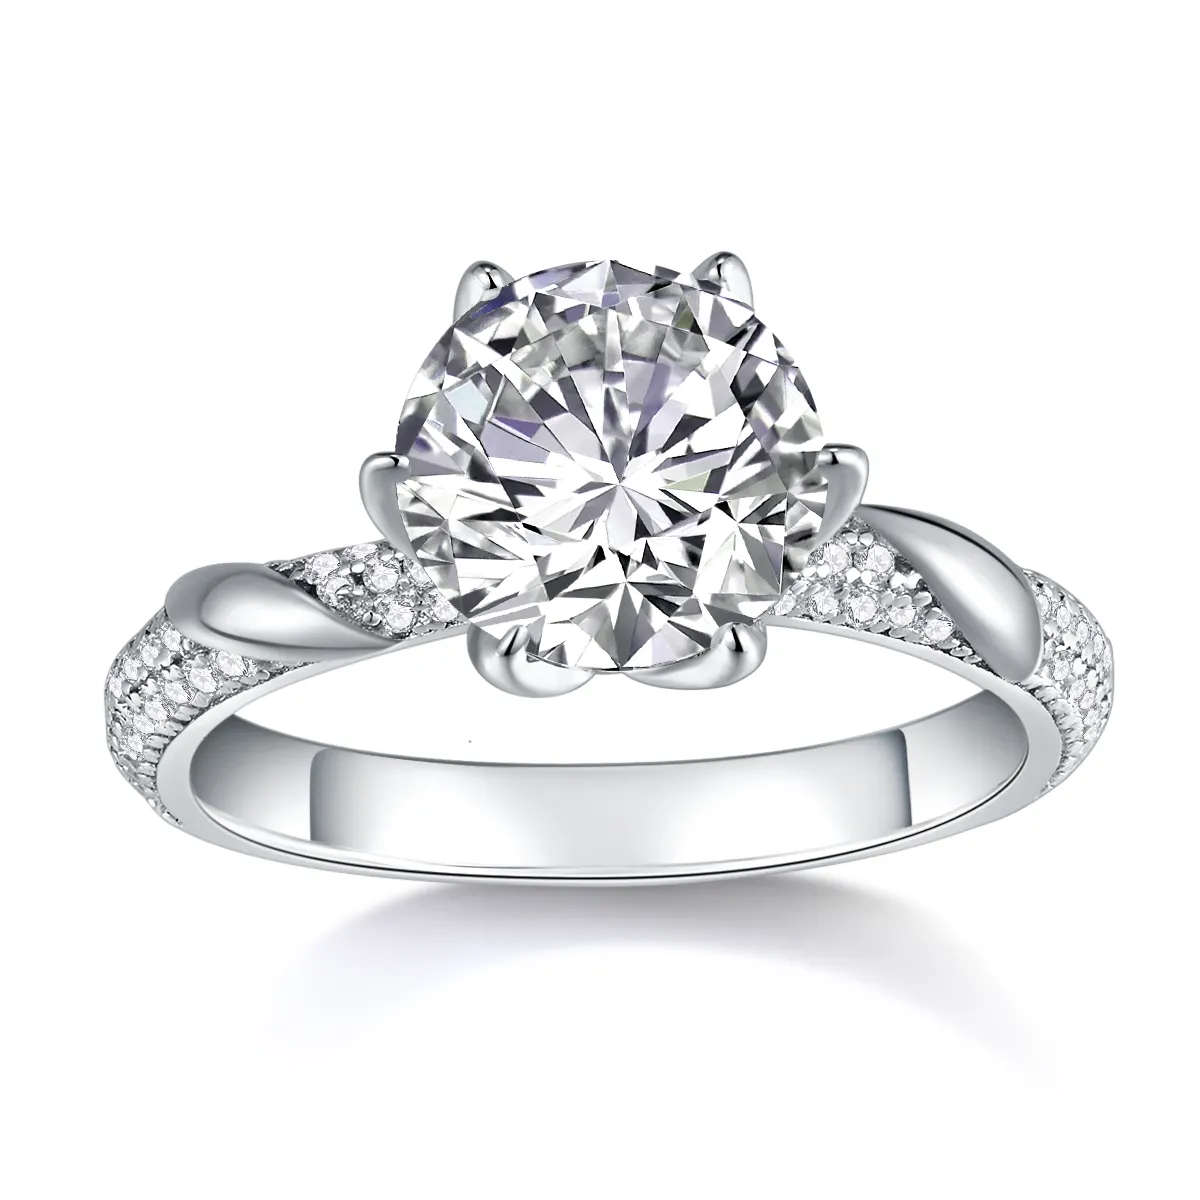 Gioielli all'ingrosso 925 argento anello VVS diamante uomo e donna matrimonio con 3 carati Moissanite